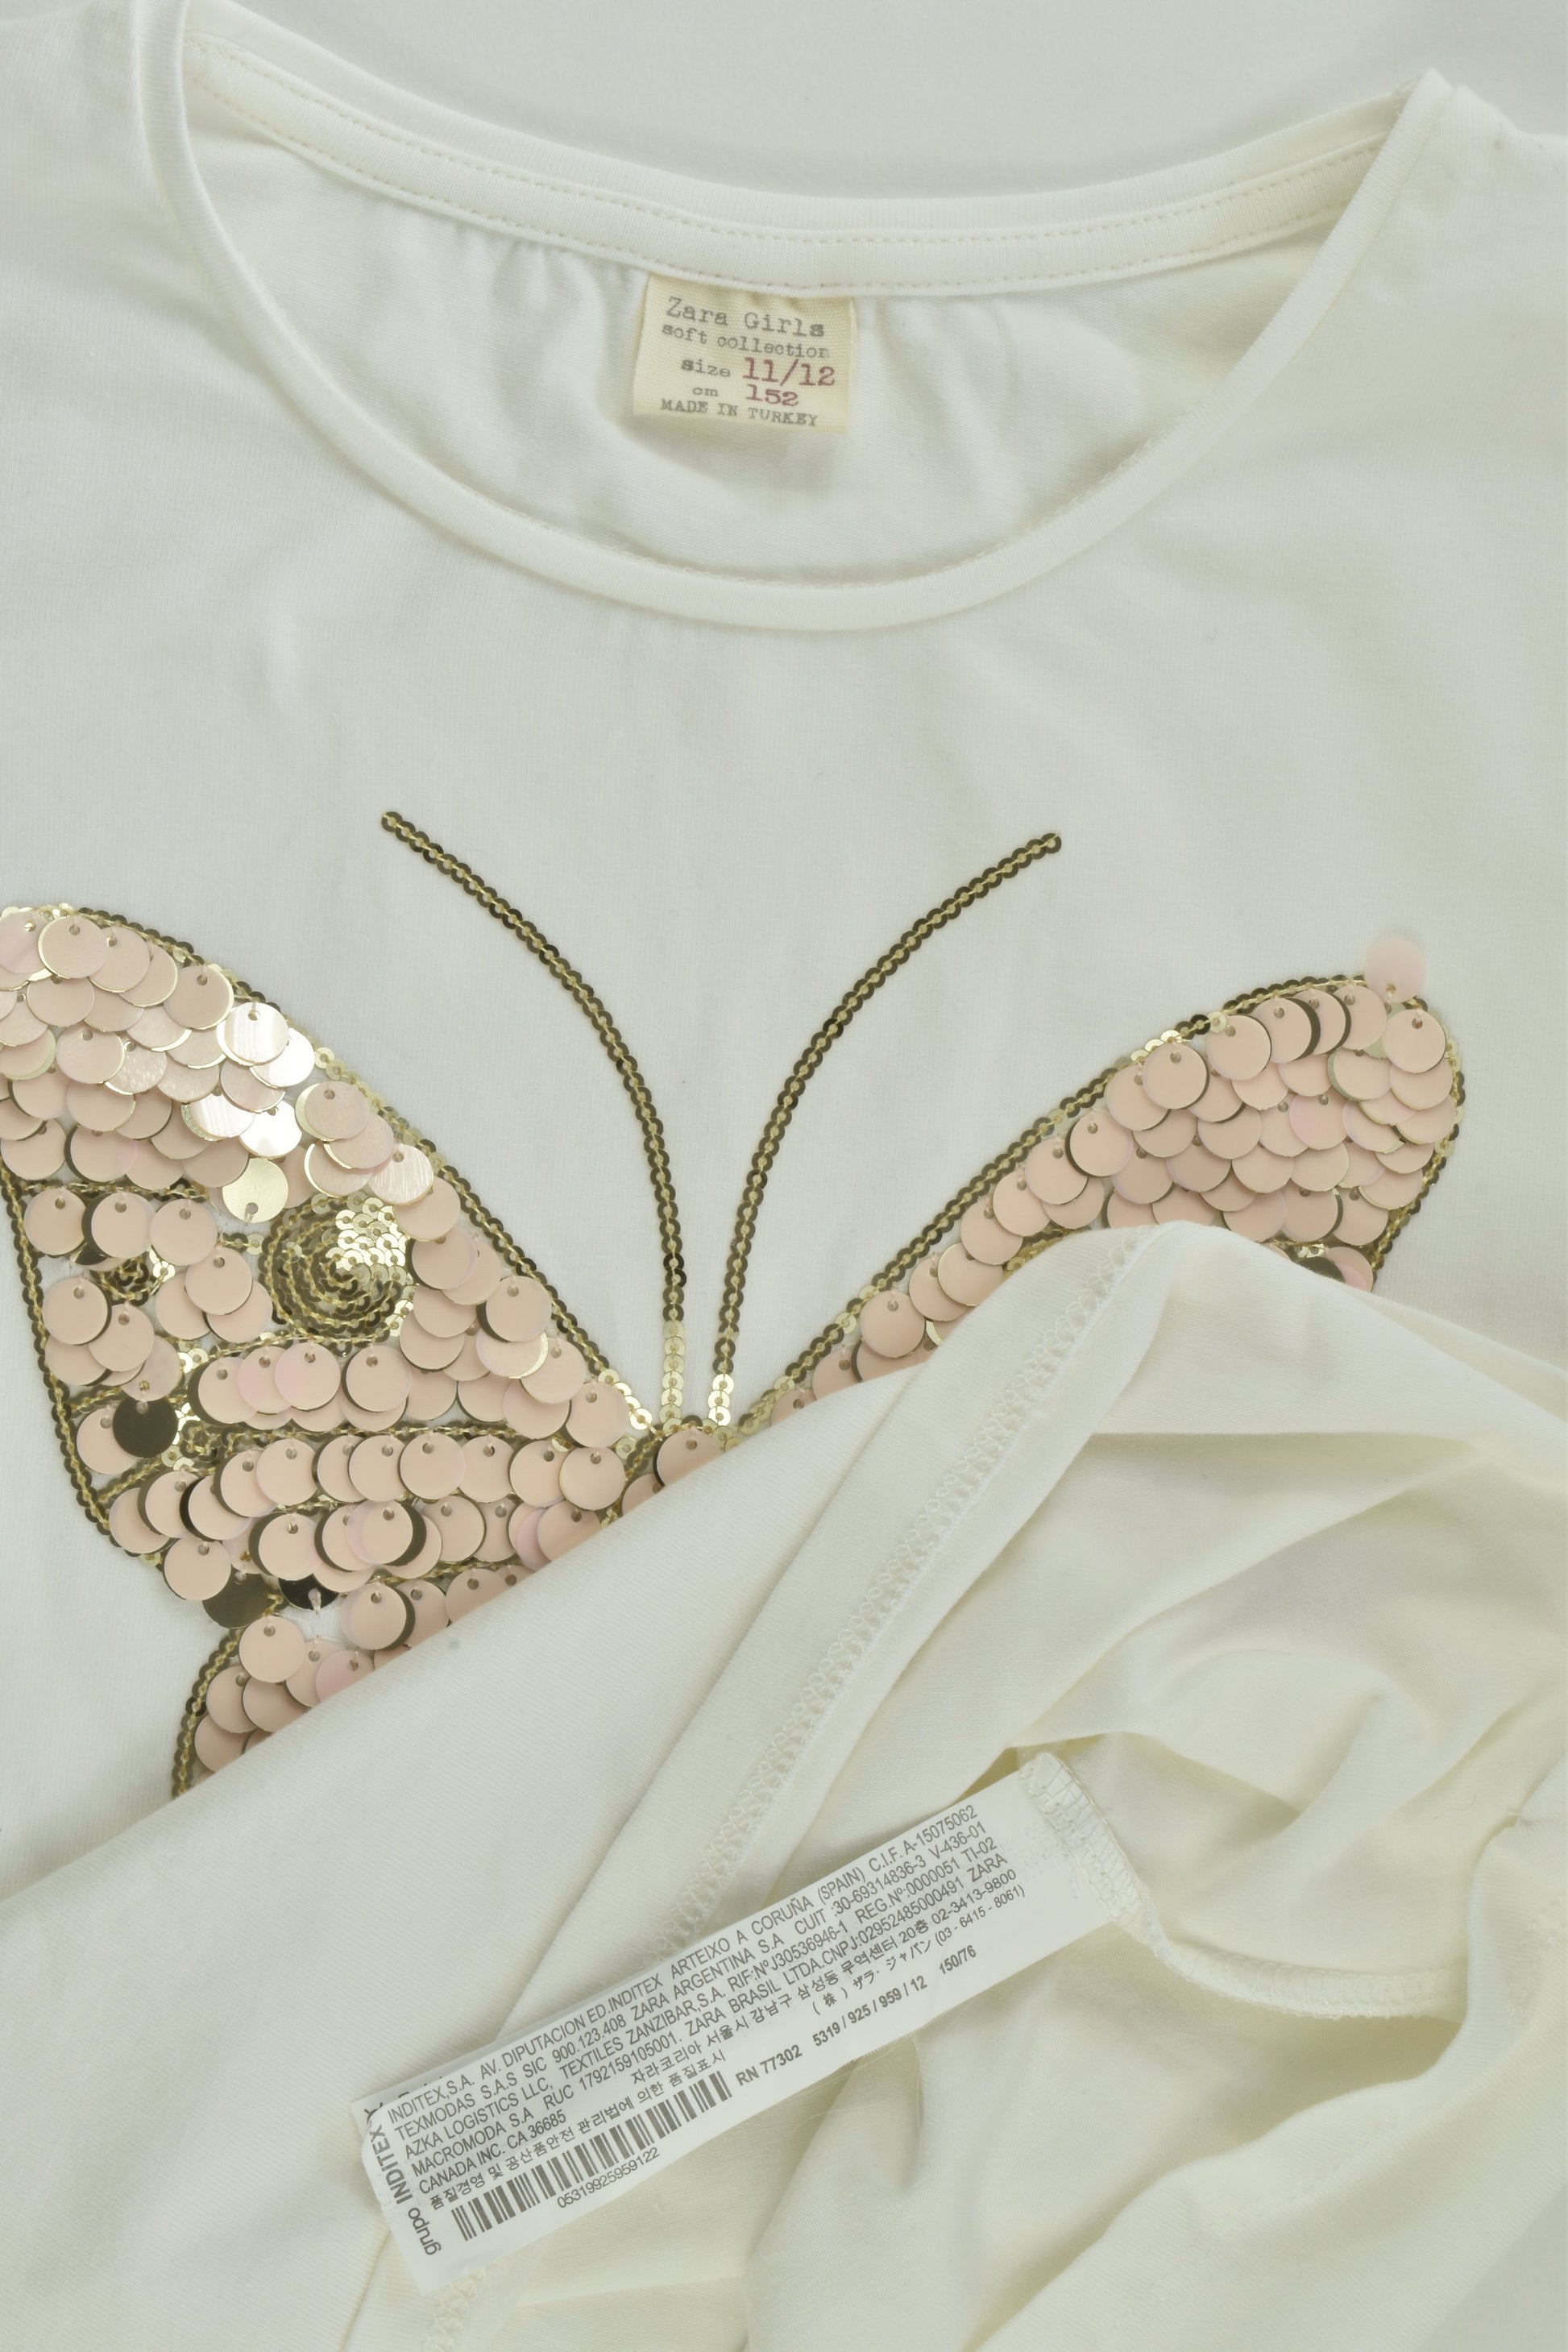 Zara Size 11/12 Butterfly Top